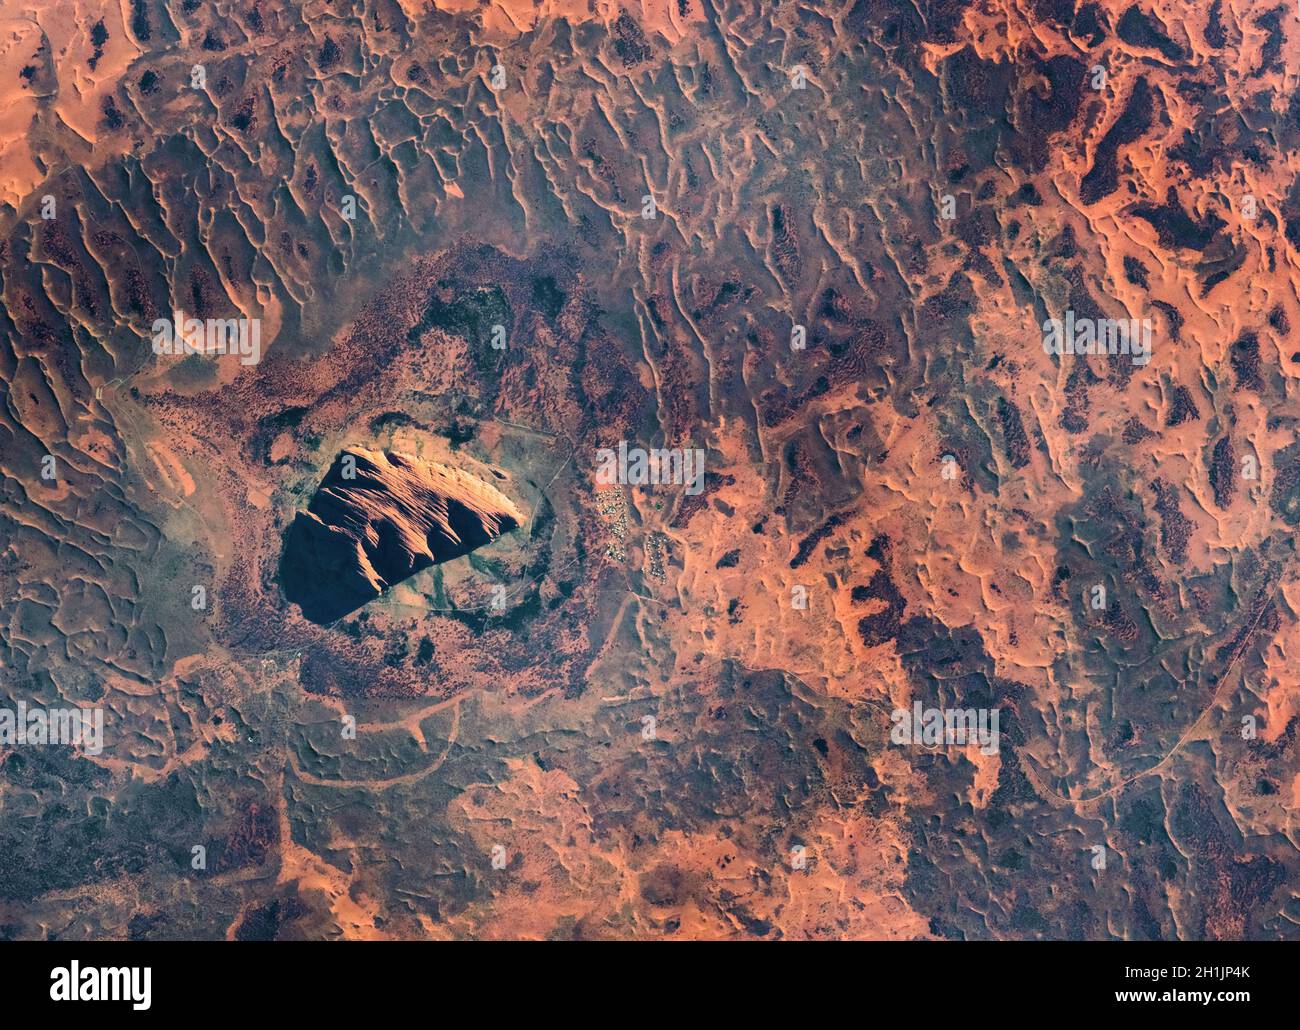 Une vue sur la Terre depuis la Station spatiale internationale : Uluru, anciennement connu sous le nom d'Ayers Rock, Australie le matin.Un site sacré vénéré.Version optimisée et numériquement améliorée d'une image NASA/ESA.Crédit obligatoire: NASA/ESA/T.Pesquet.NB: Restrictions d'utilisation: Ne pas présenter comme endossement. Banque D'Images